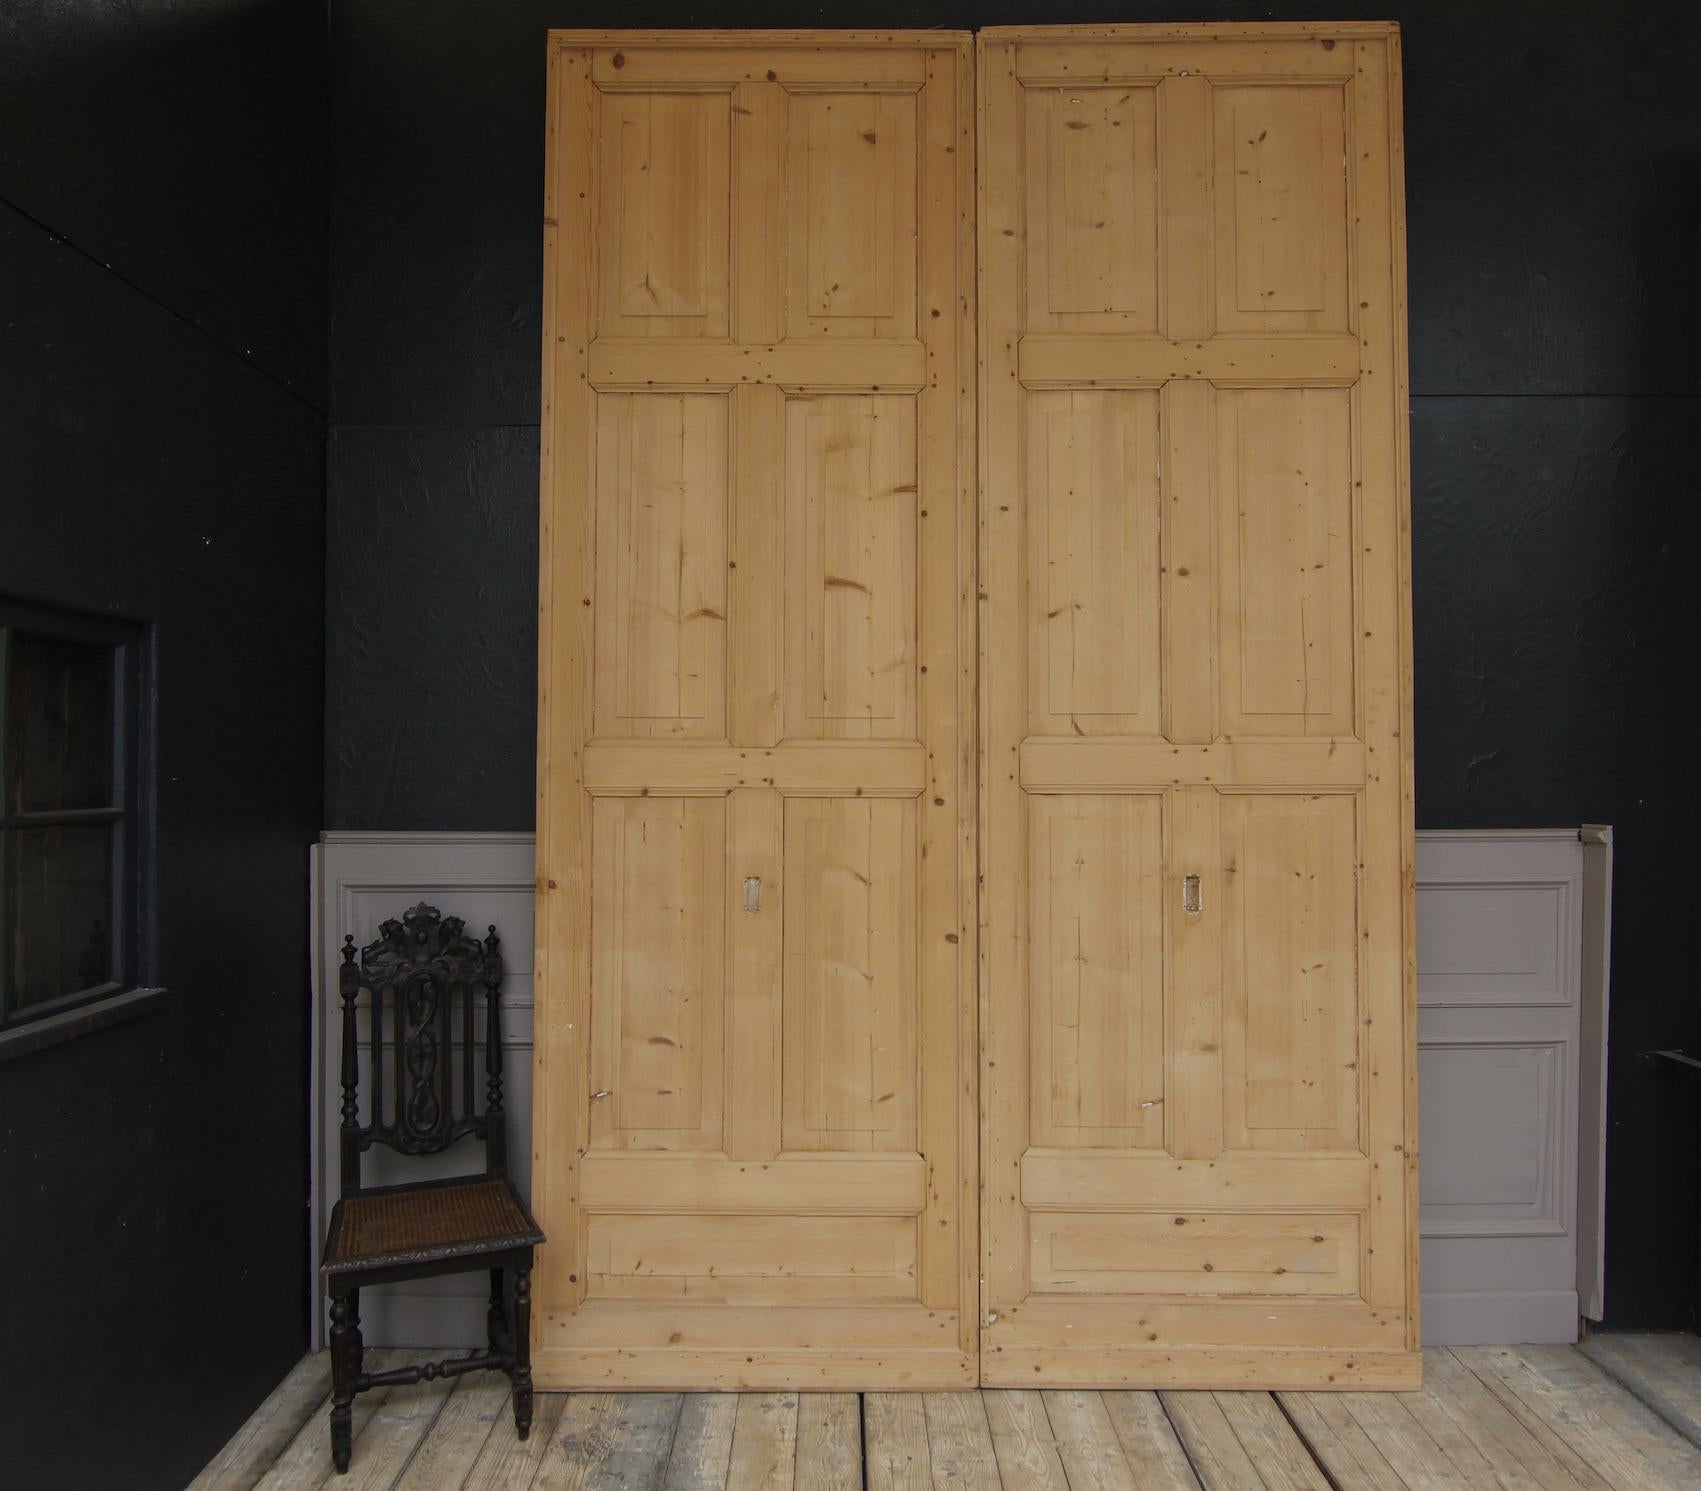 Zwei große Schiebetüren aus einer Schweizer Villa aus der Zeit um 1900. Aus massivem Kiefernholz, jeweils mit 7 Platten.
Die Türen werden im rohen Holzzustand von der Farbe befreit und sind bereit für die weitere Verarbeitung.

Abmessungen pro